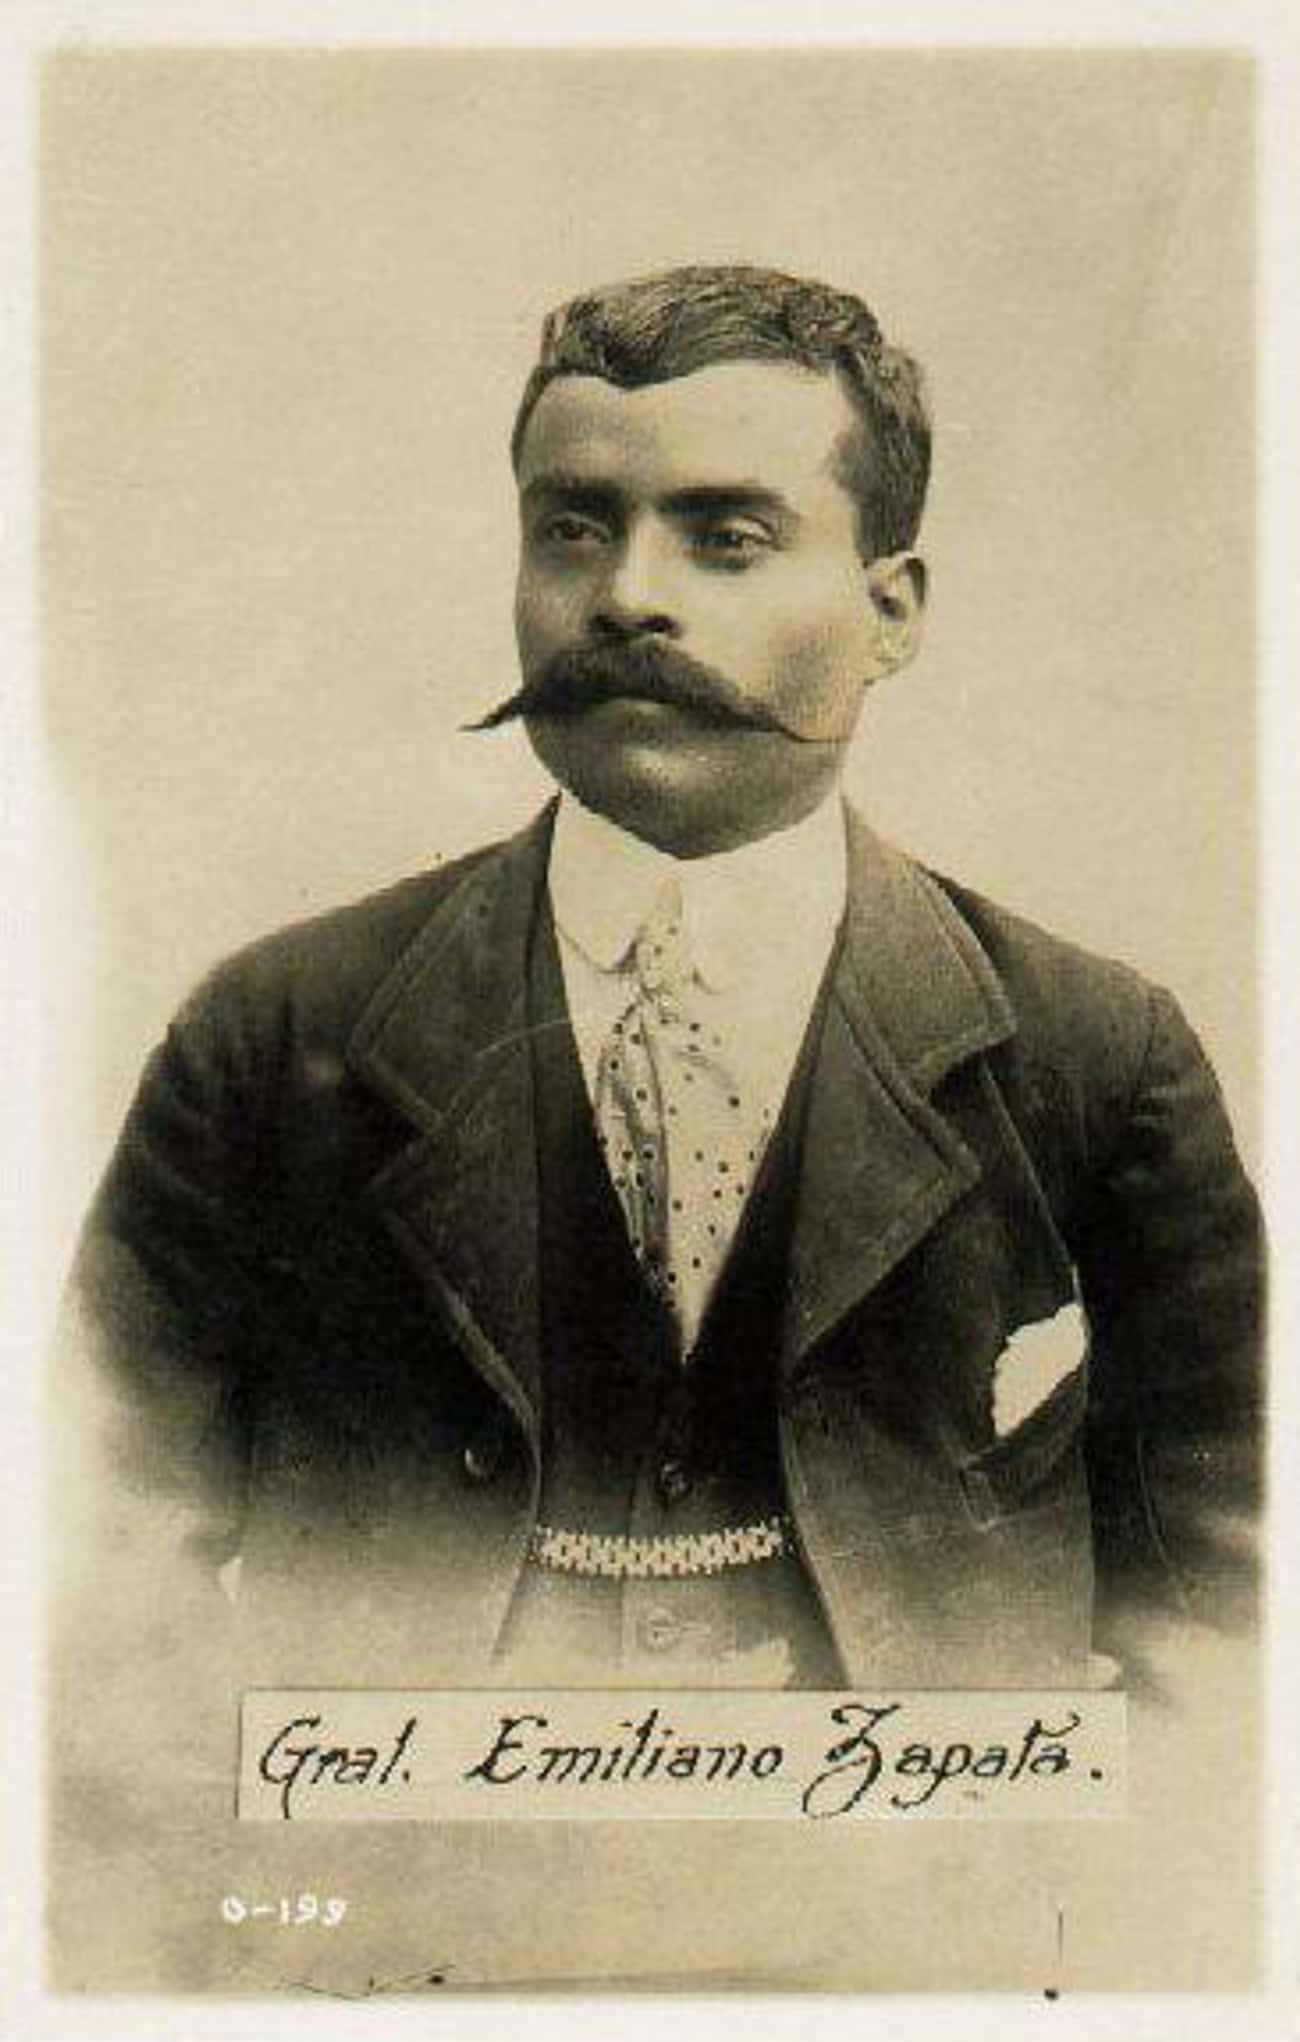 Emiliano Zapata, Popular Hero and Revolutionary Martyr